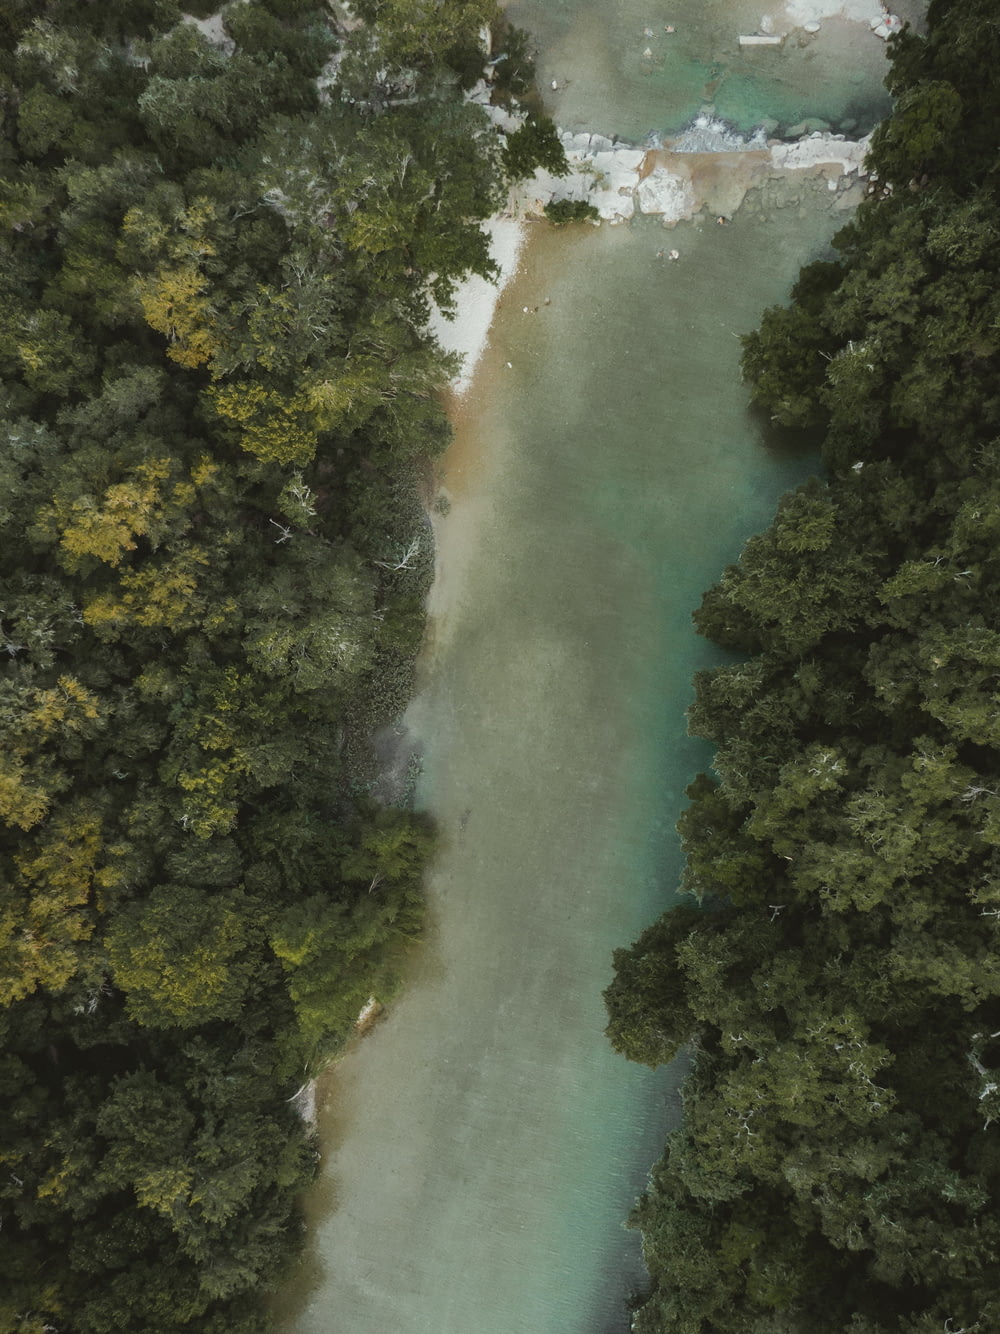 bird's-eye view of river between trees